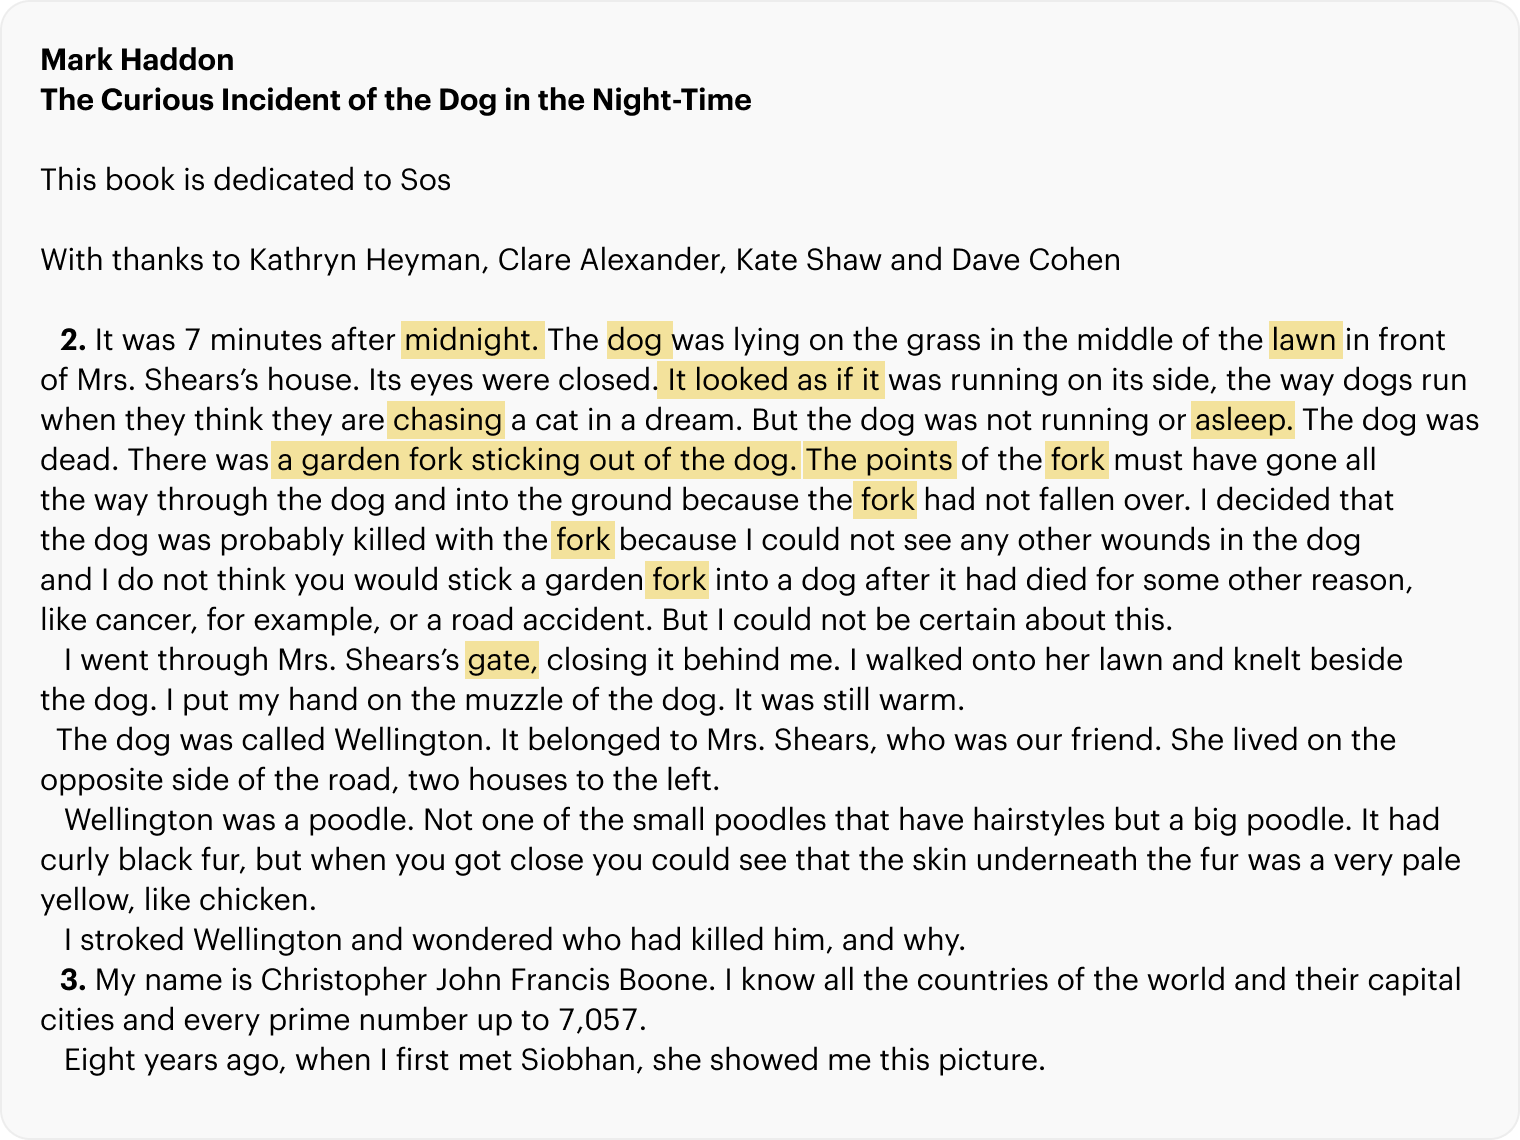 Первые предложения из «Загадочного ночного убийства собаки» — простого художественного текста. Здесь и далее я выделила грамматические и лексические особенности, на которых стоит заострить внимание. Например, в этом отрывке часто повторяется слово fork